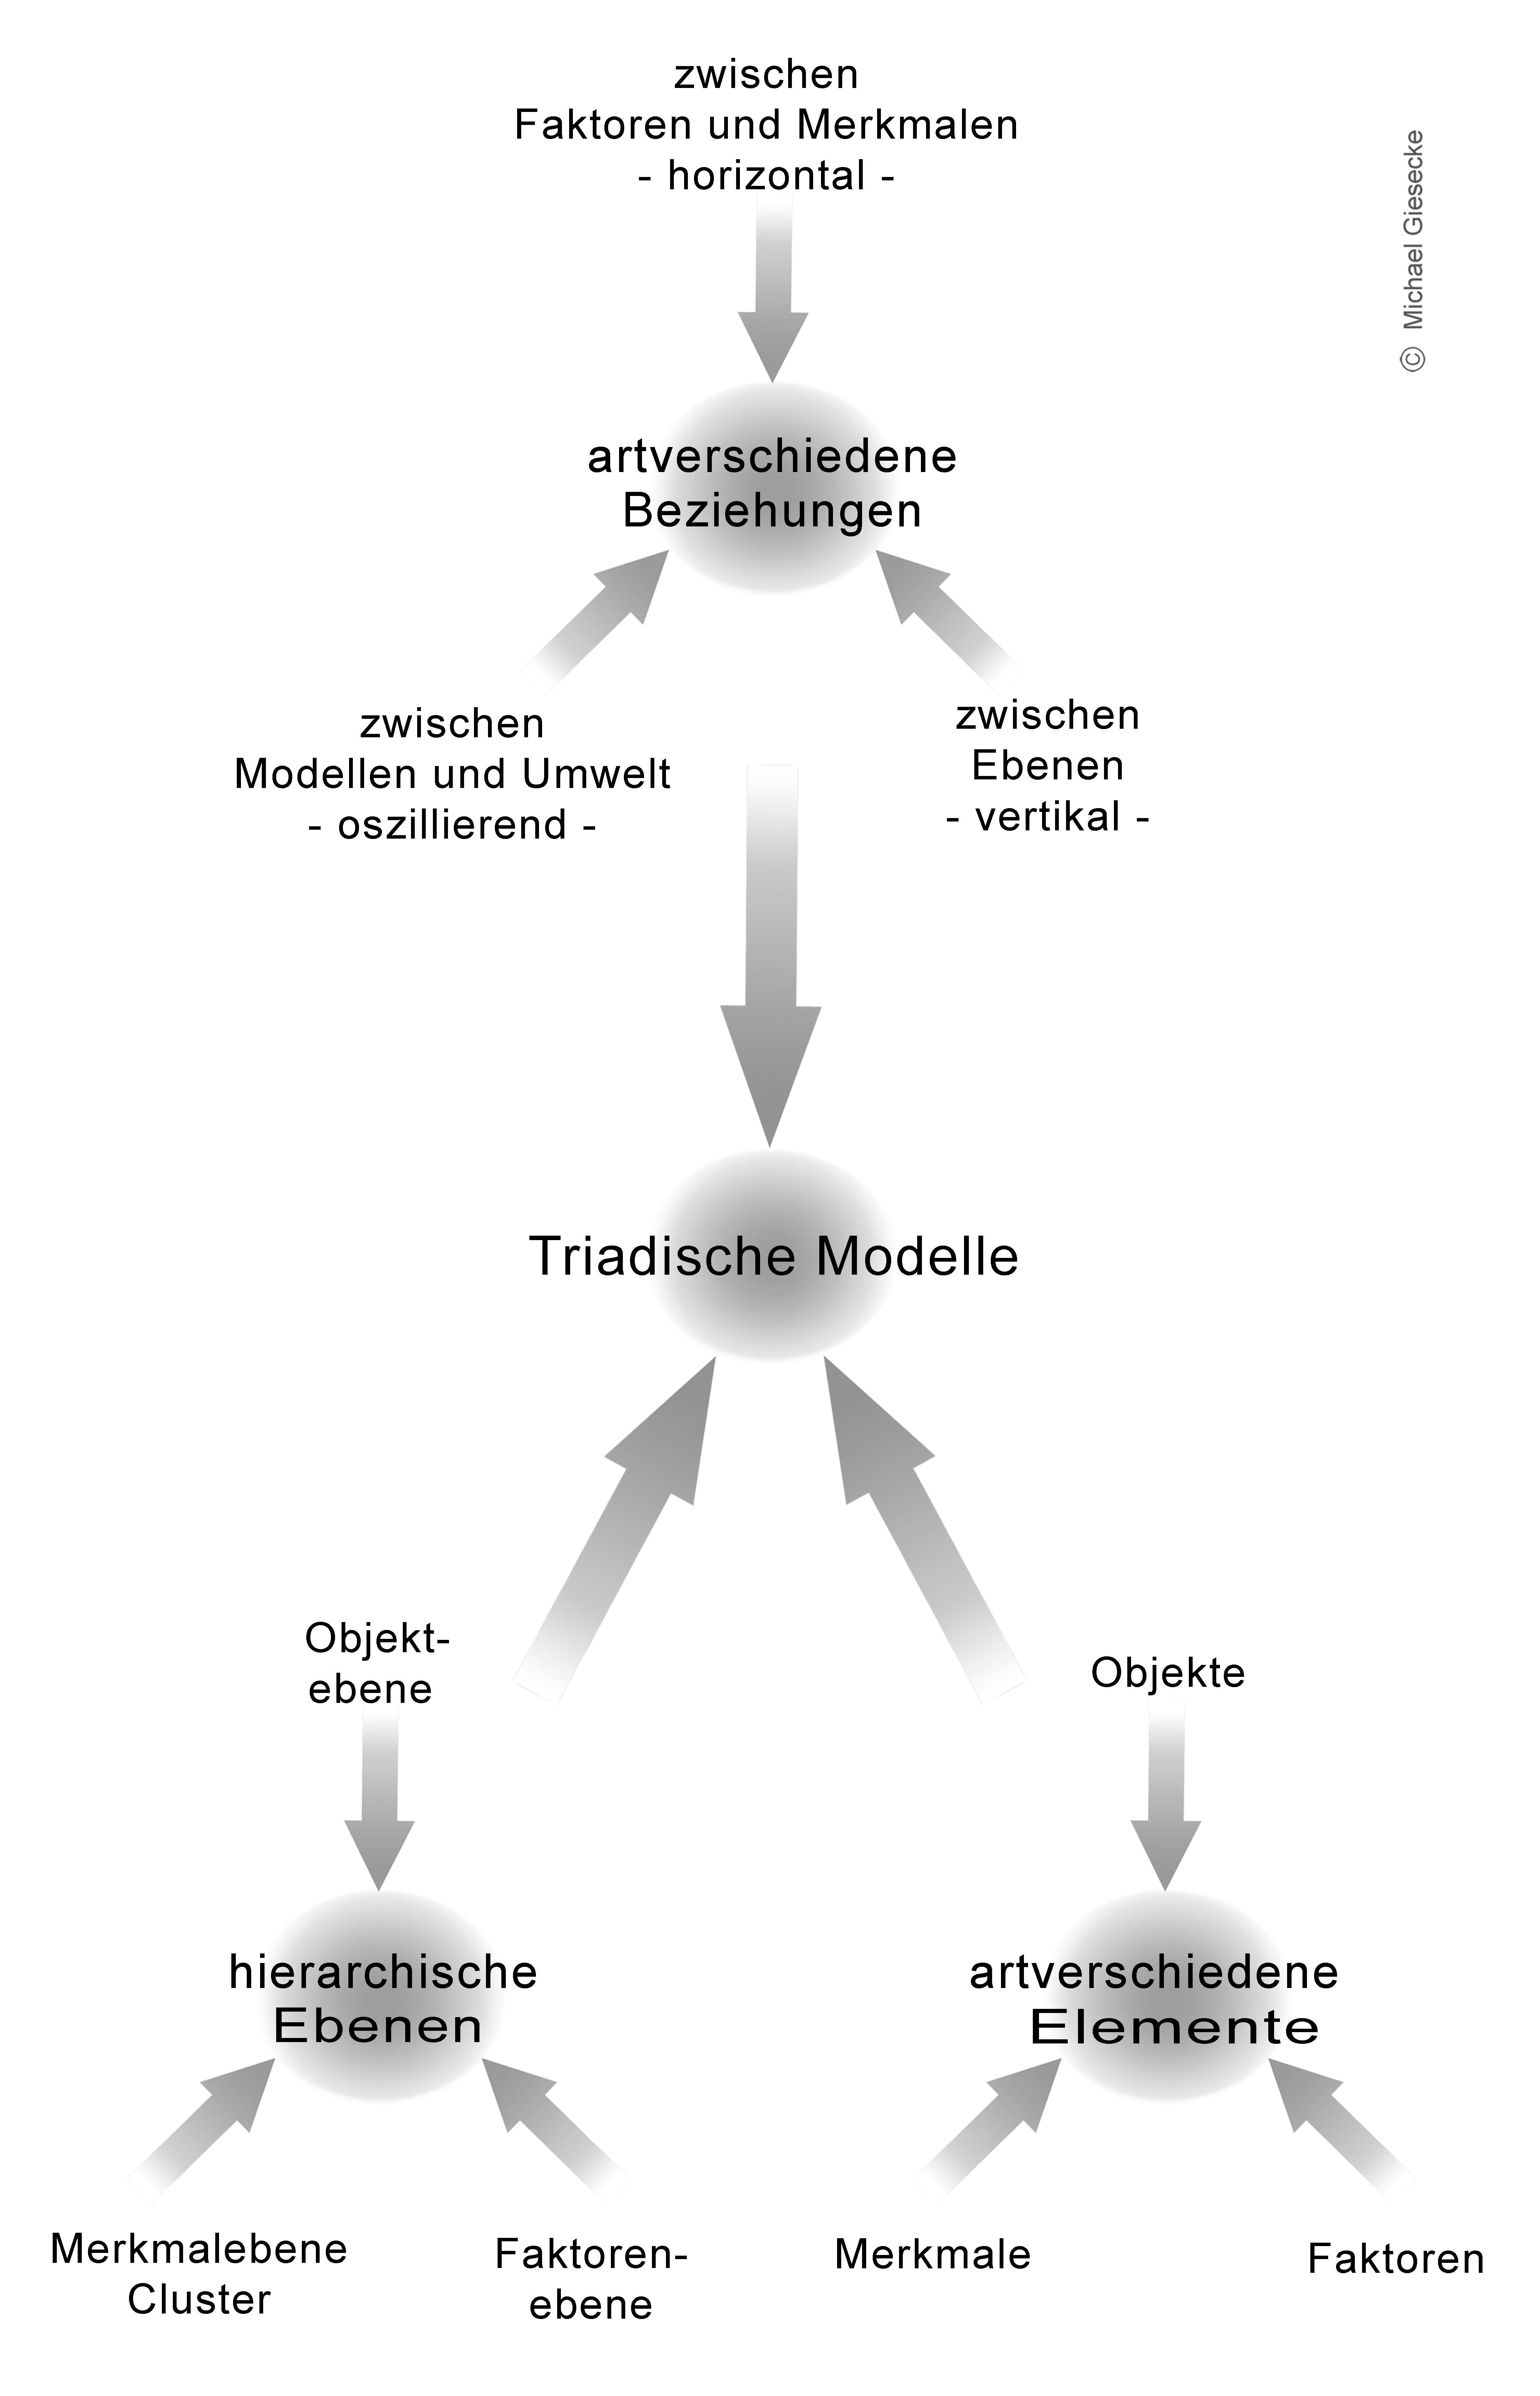 Architektur des Metamodells der Basistriade